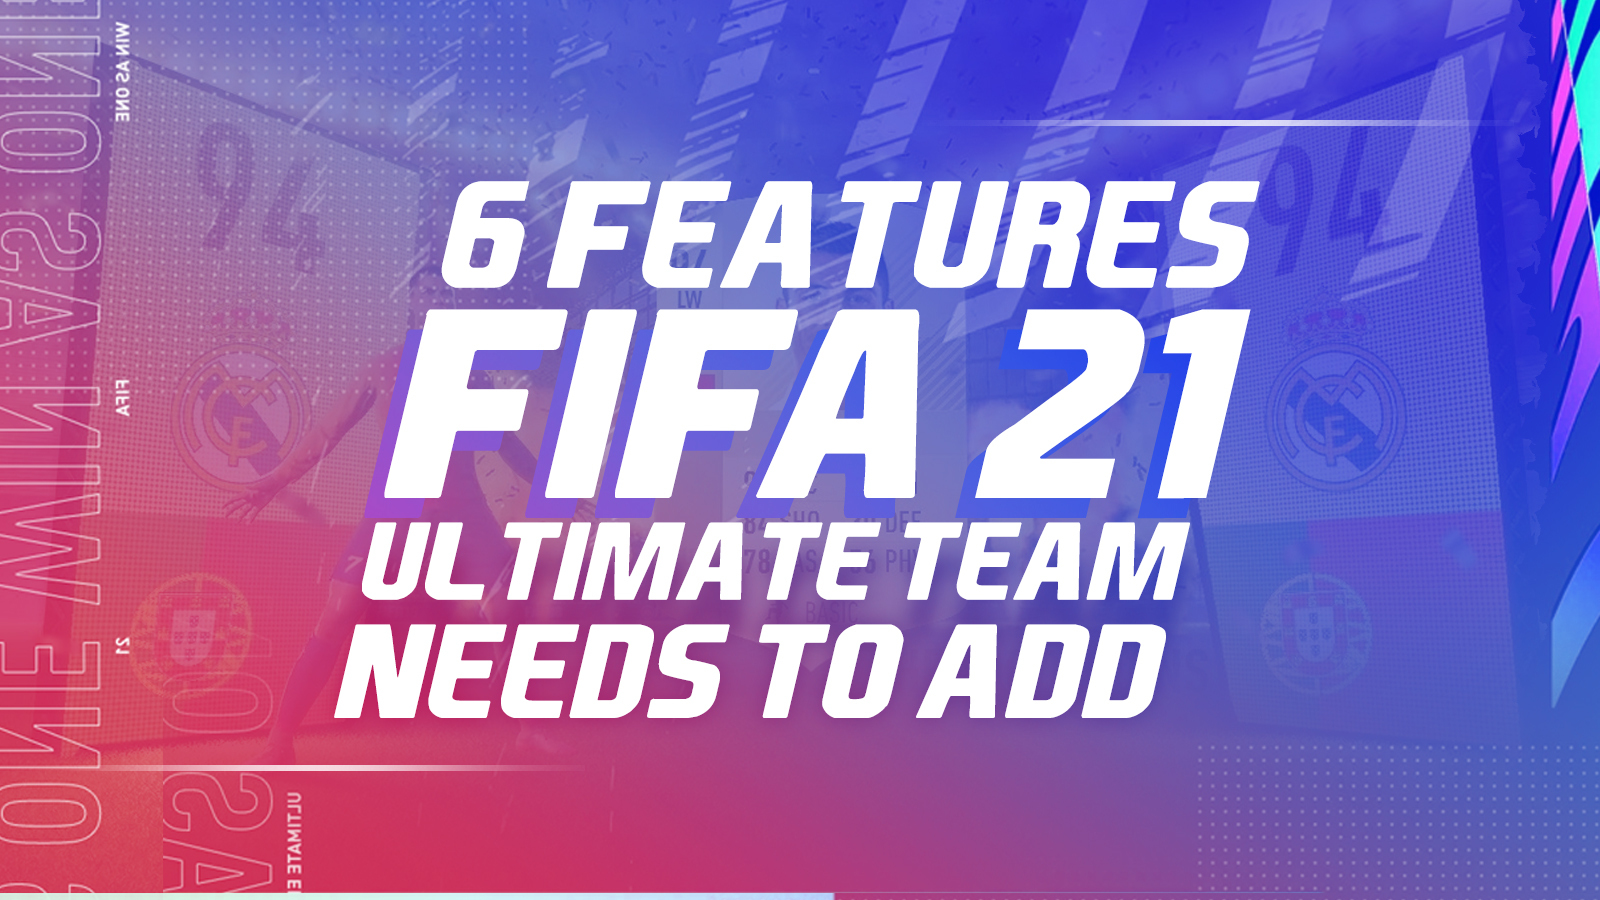 Ksi Ultimate Team Fifa 14